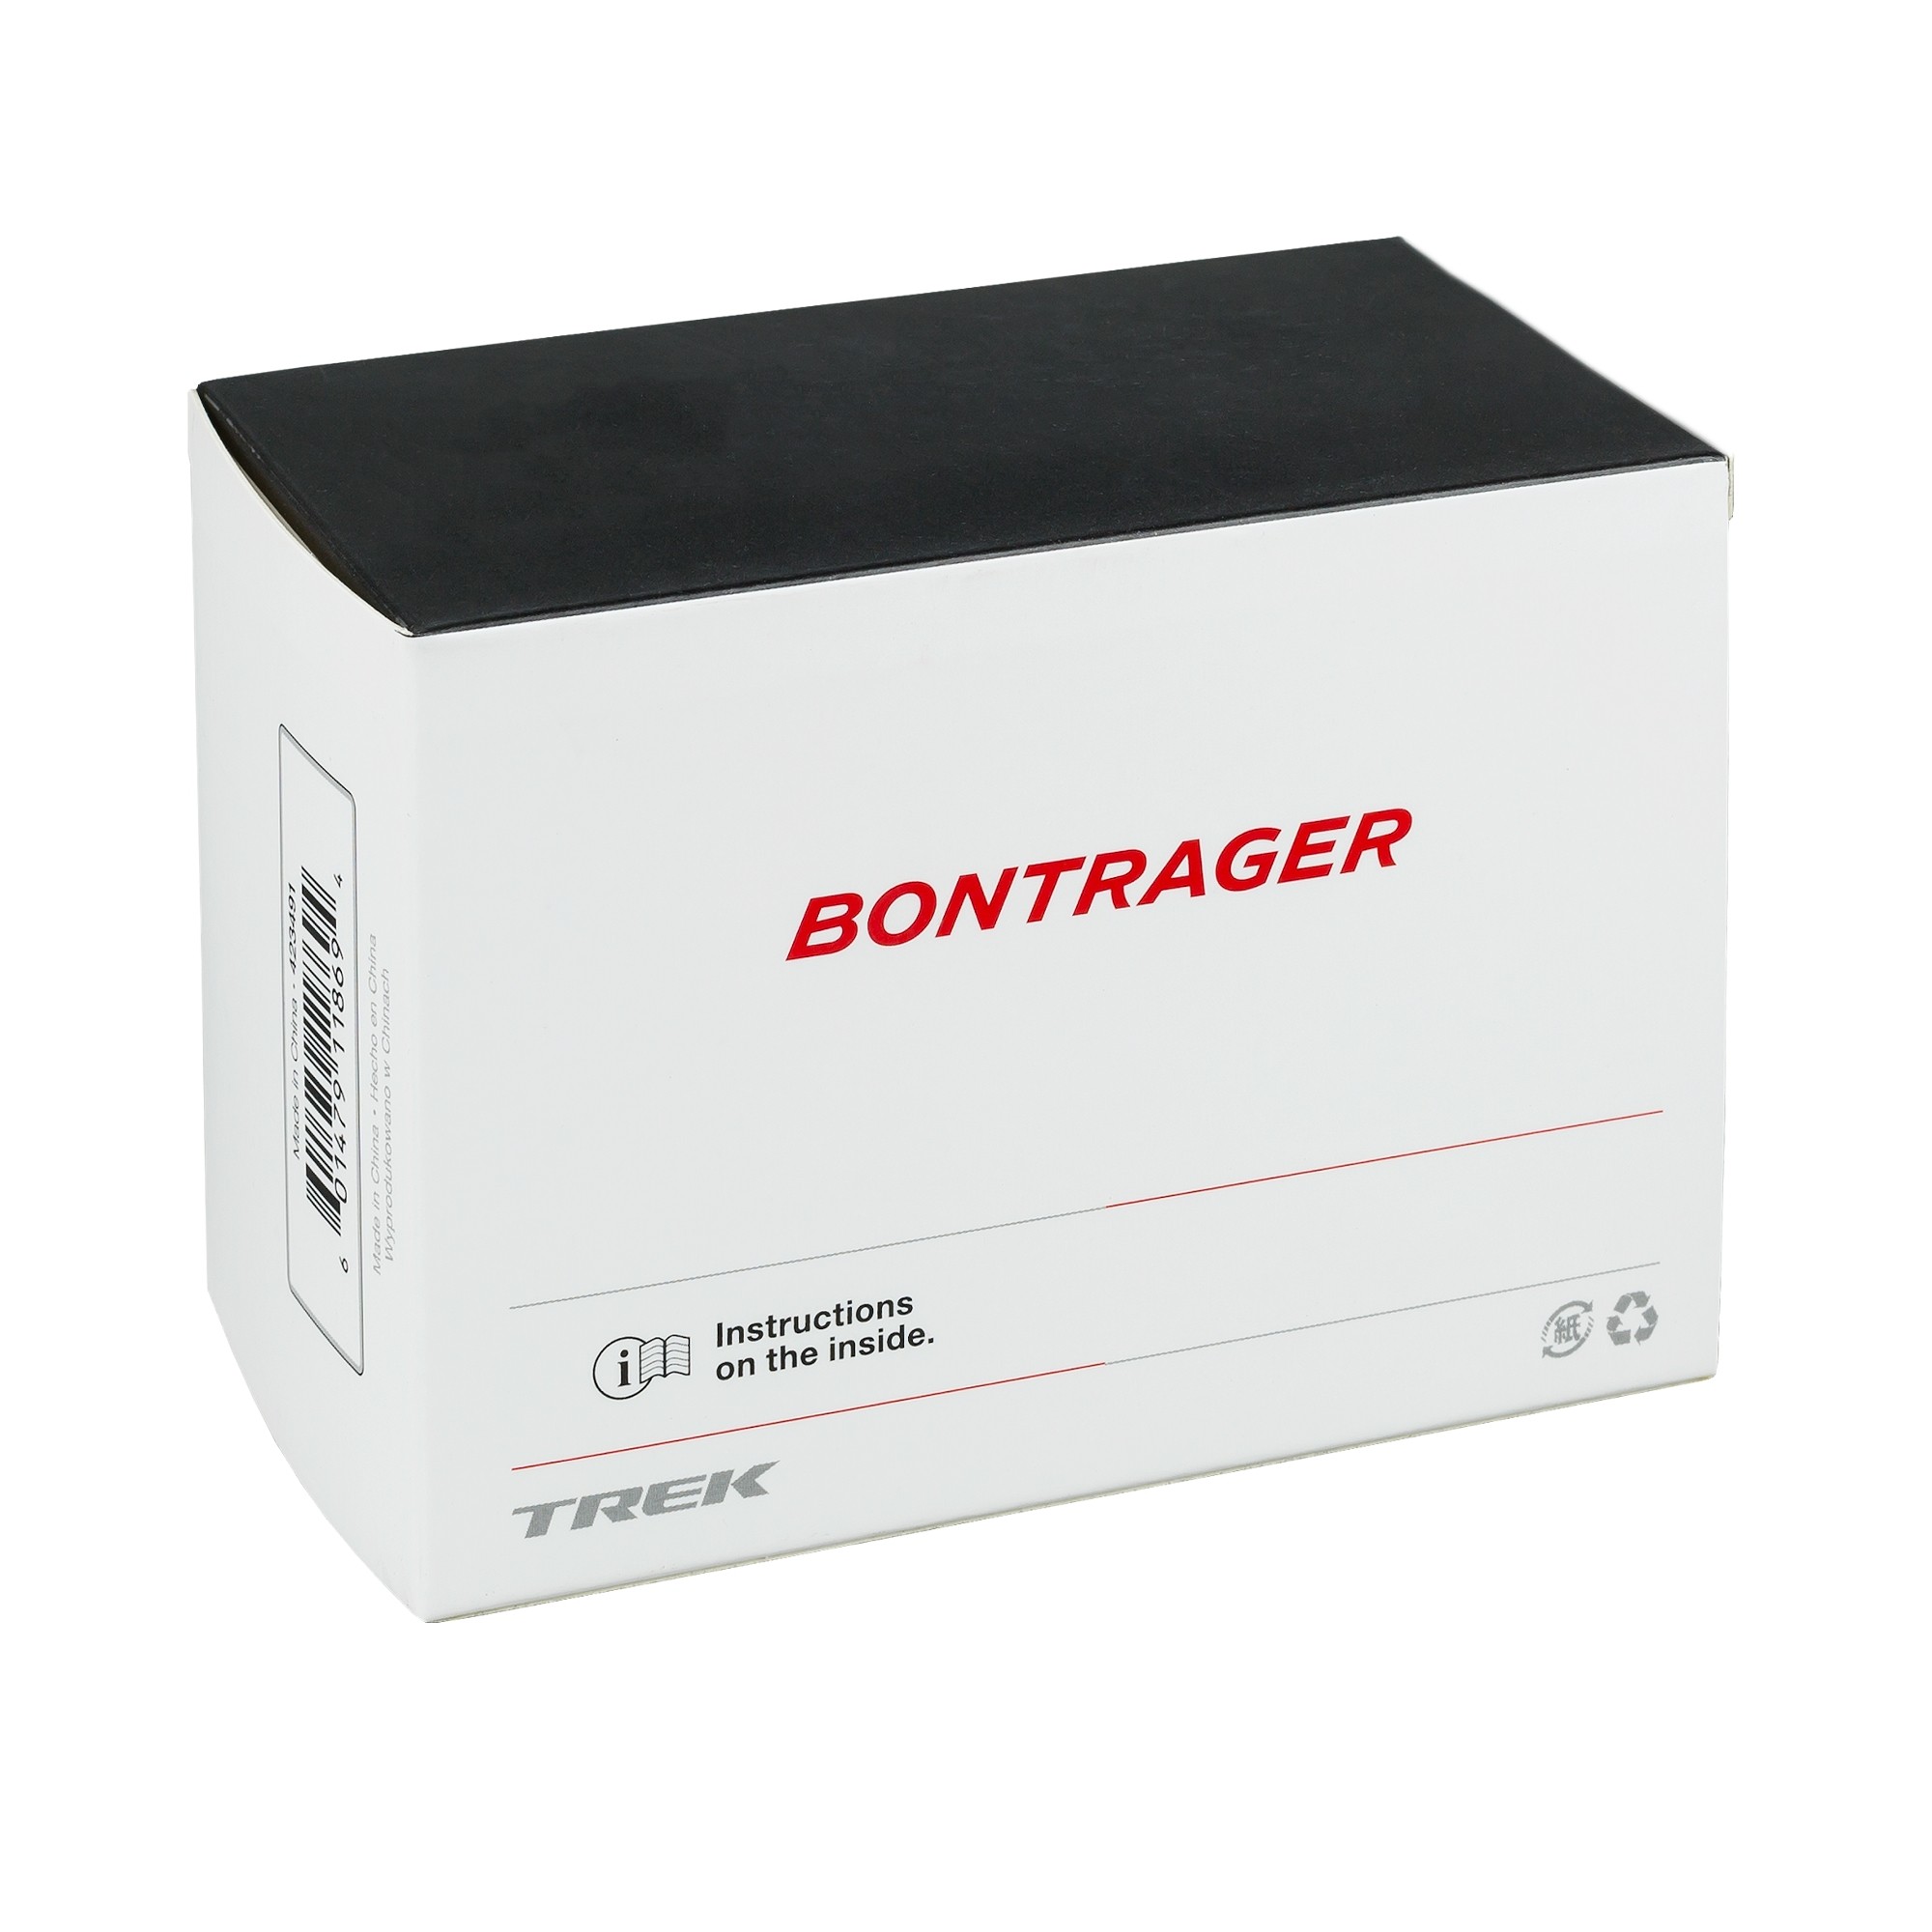 Duše Bontrager 27.5x2.0-2.4 PV 48mm samotěsnící